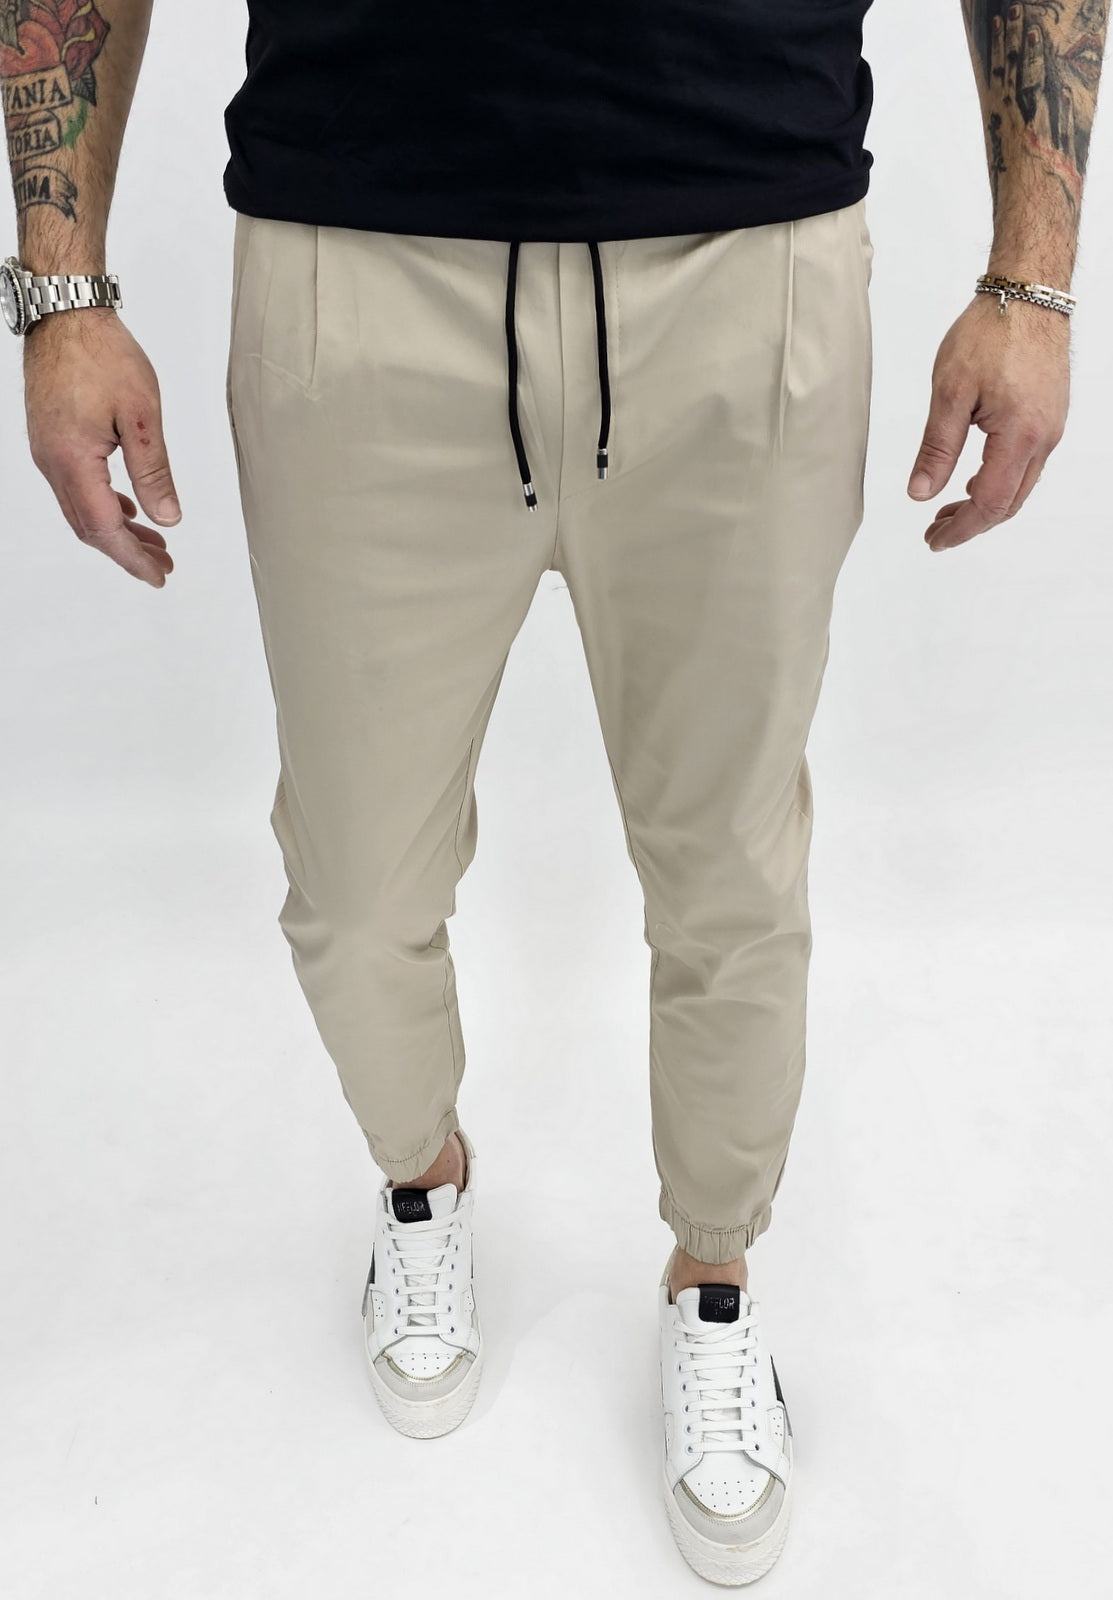 Pantalone Uomo Cotone Elastico Capri Tasche Americane Molla Caviglie 5 colori